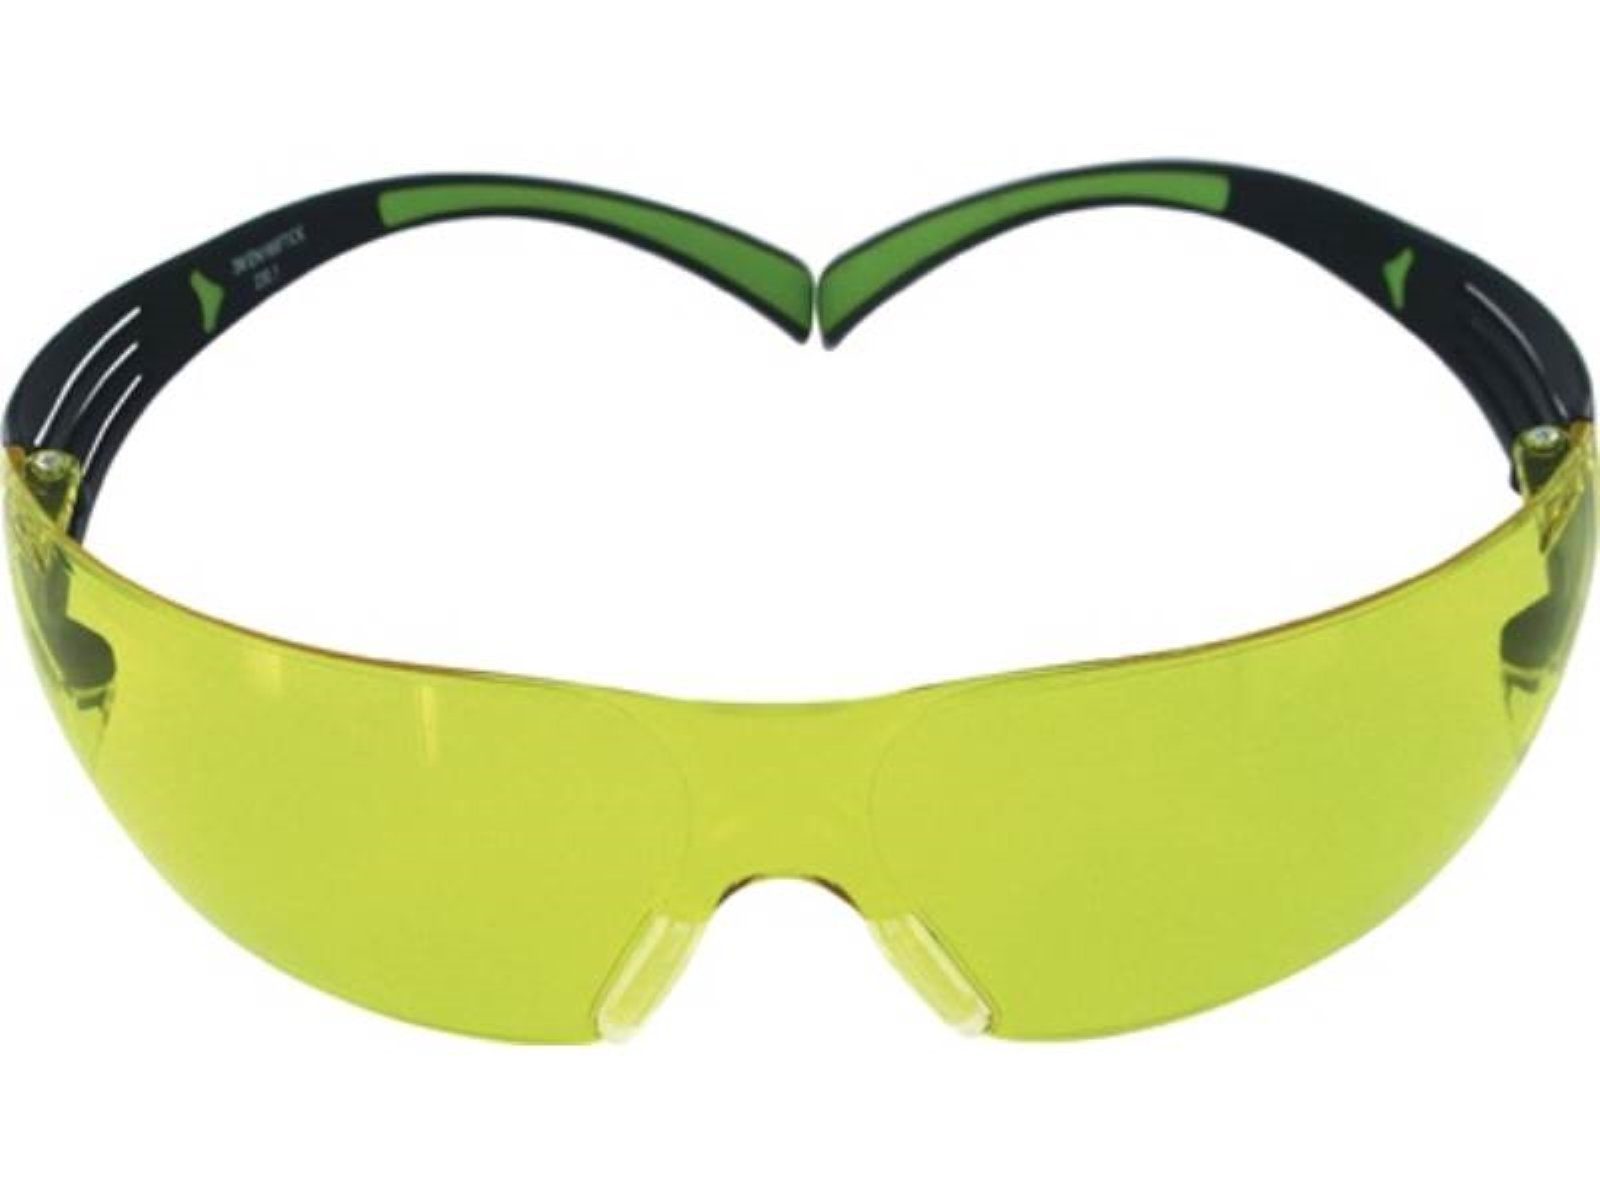 3M Arbeitsschutzbrille Schutzbrille SecureFit-SF400 EN 166,EN 170 Bügel schwarz grün,Scheib